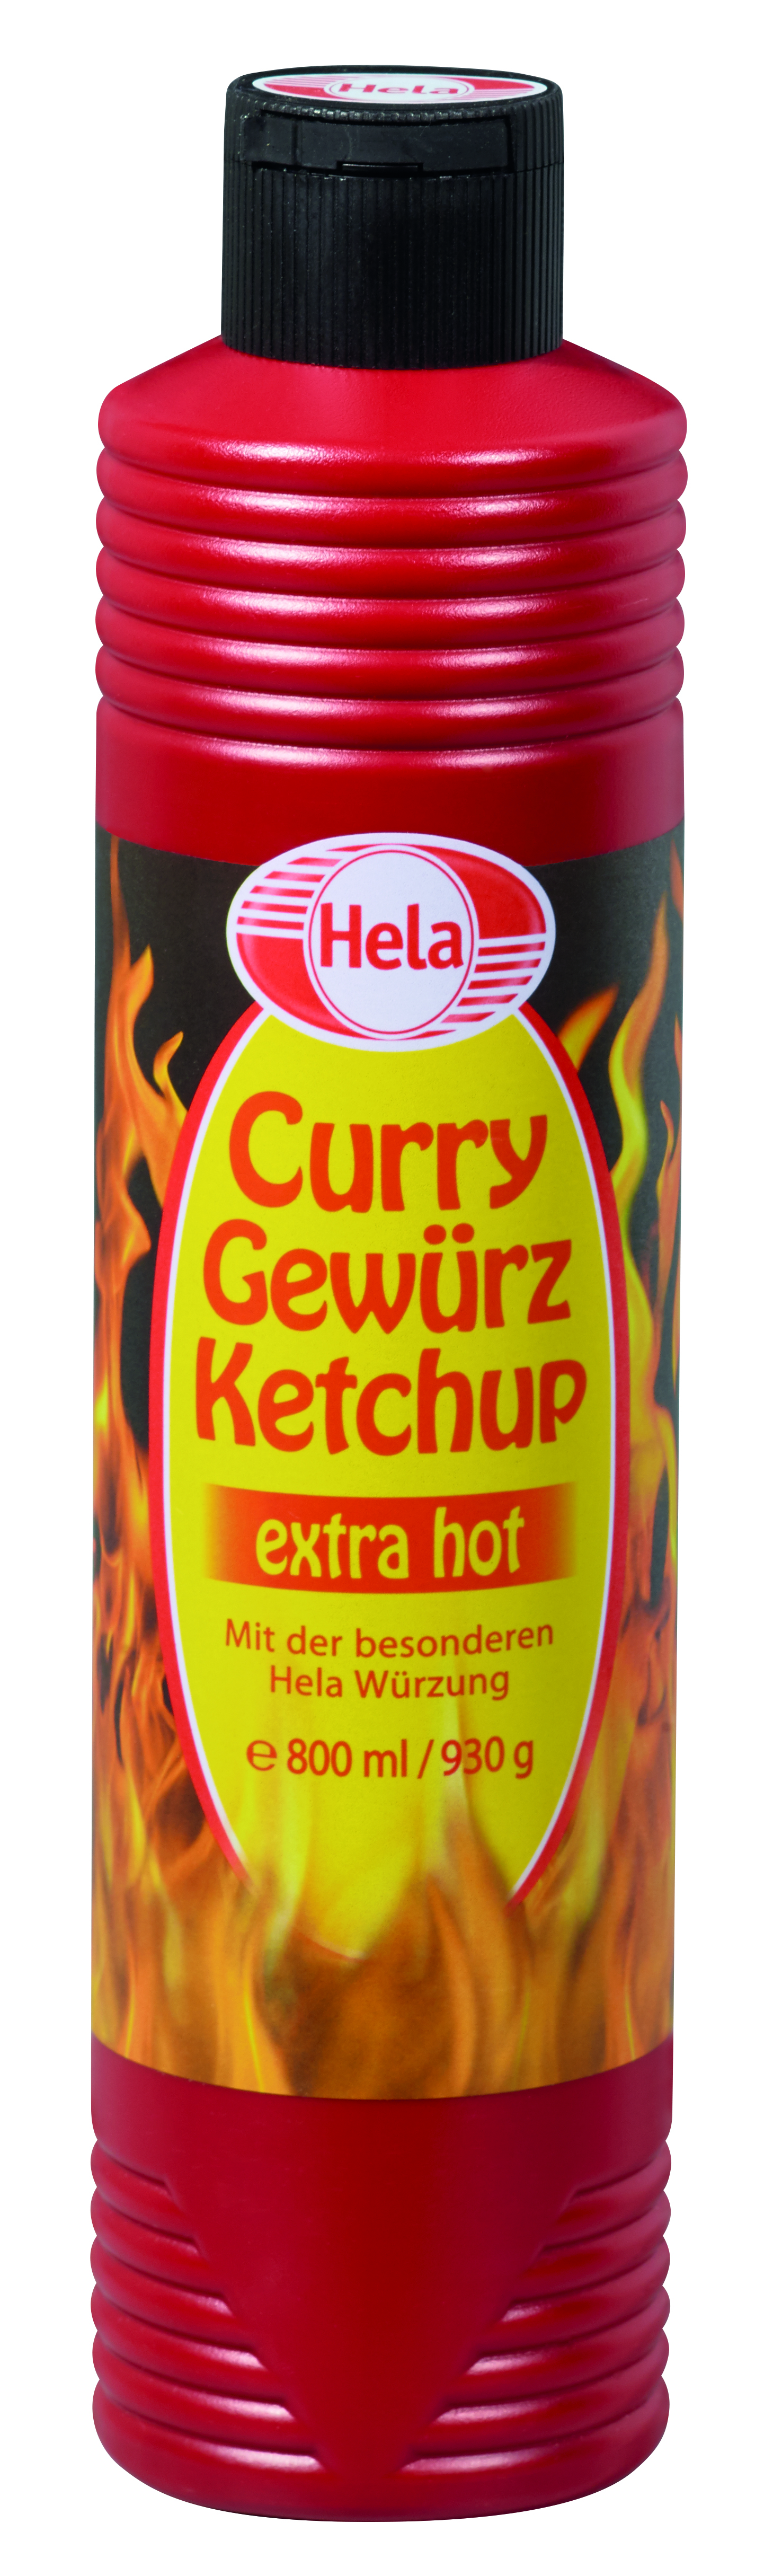 Hela Curry Gewürz Ketchup extra scharf 800ml Flasche